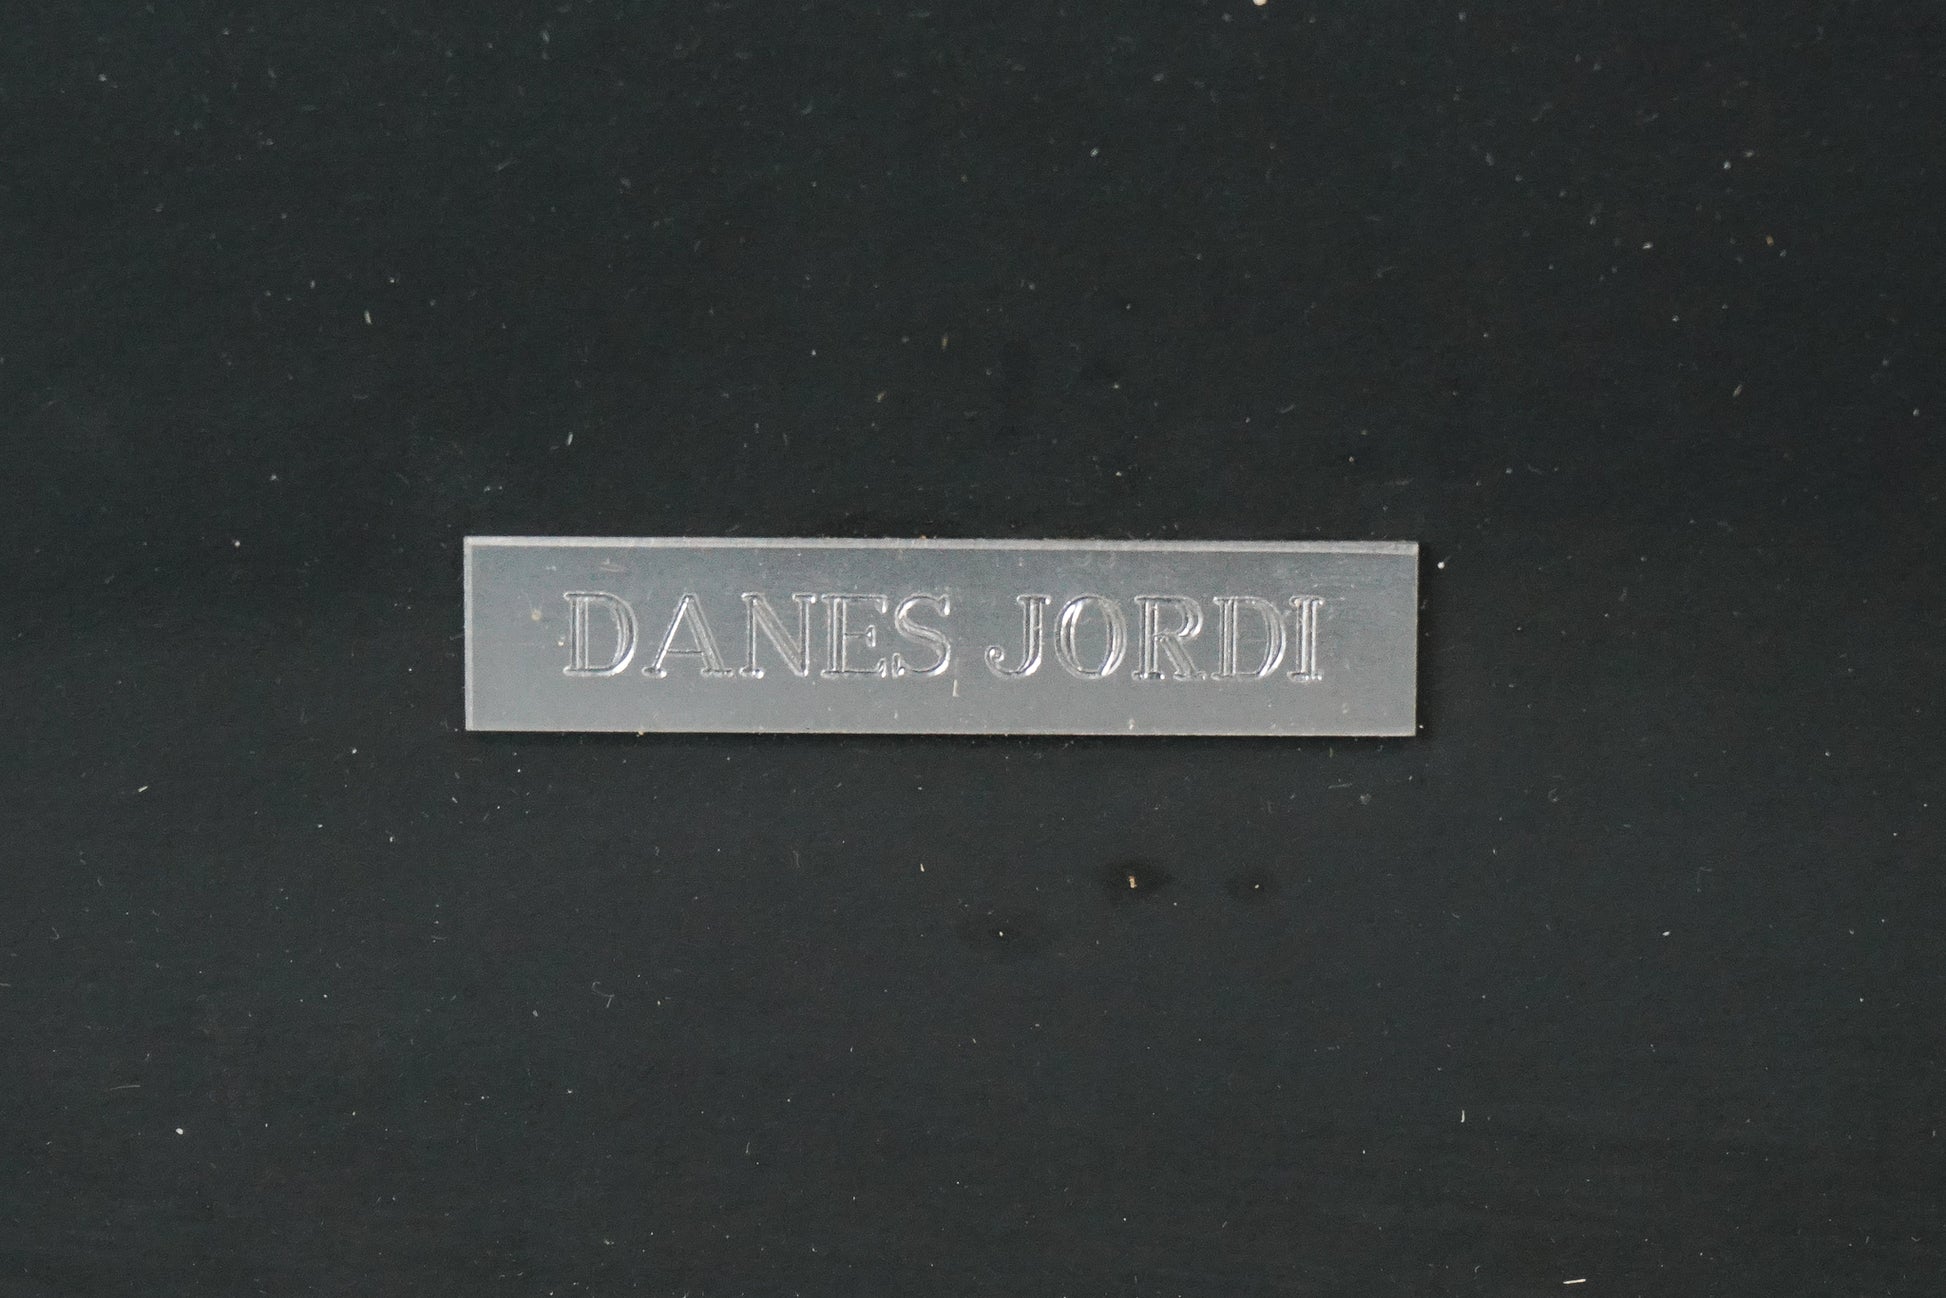 Danes Jordi - 1935-2006